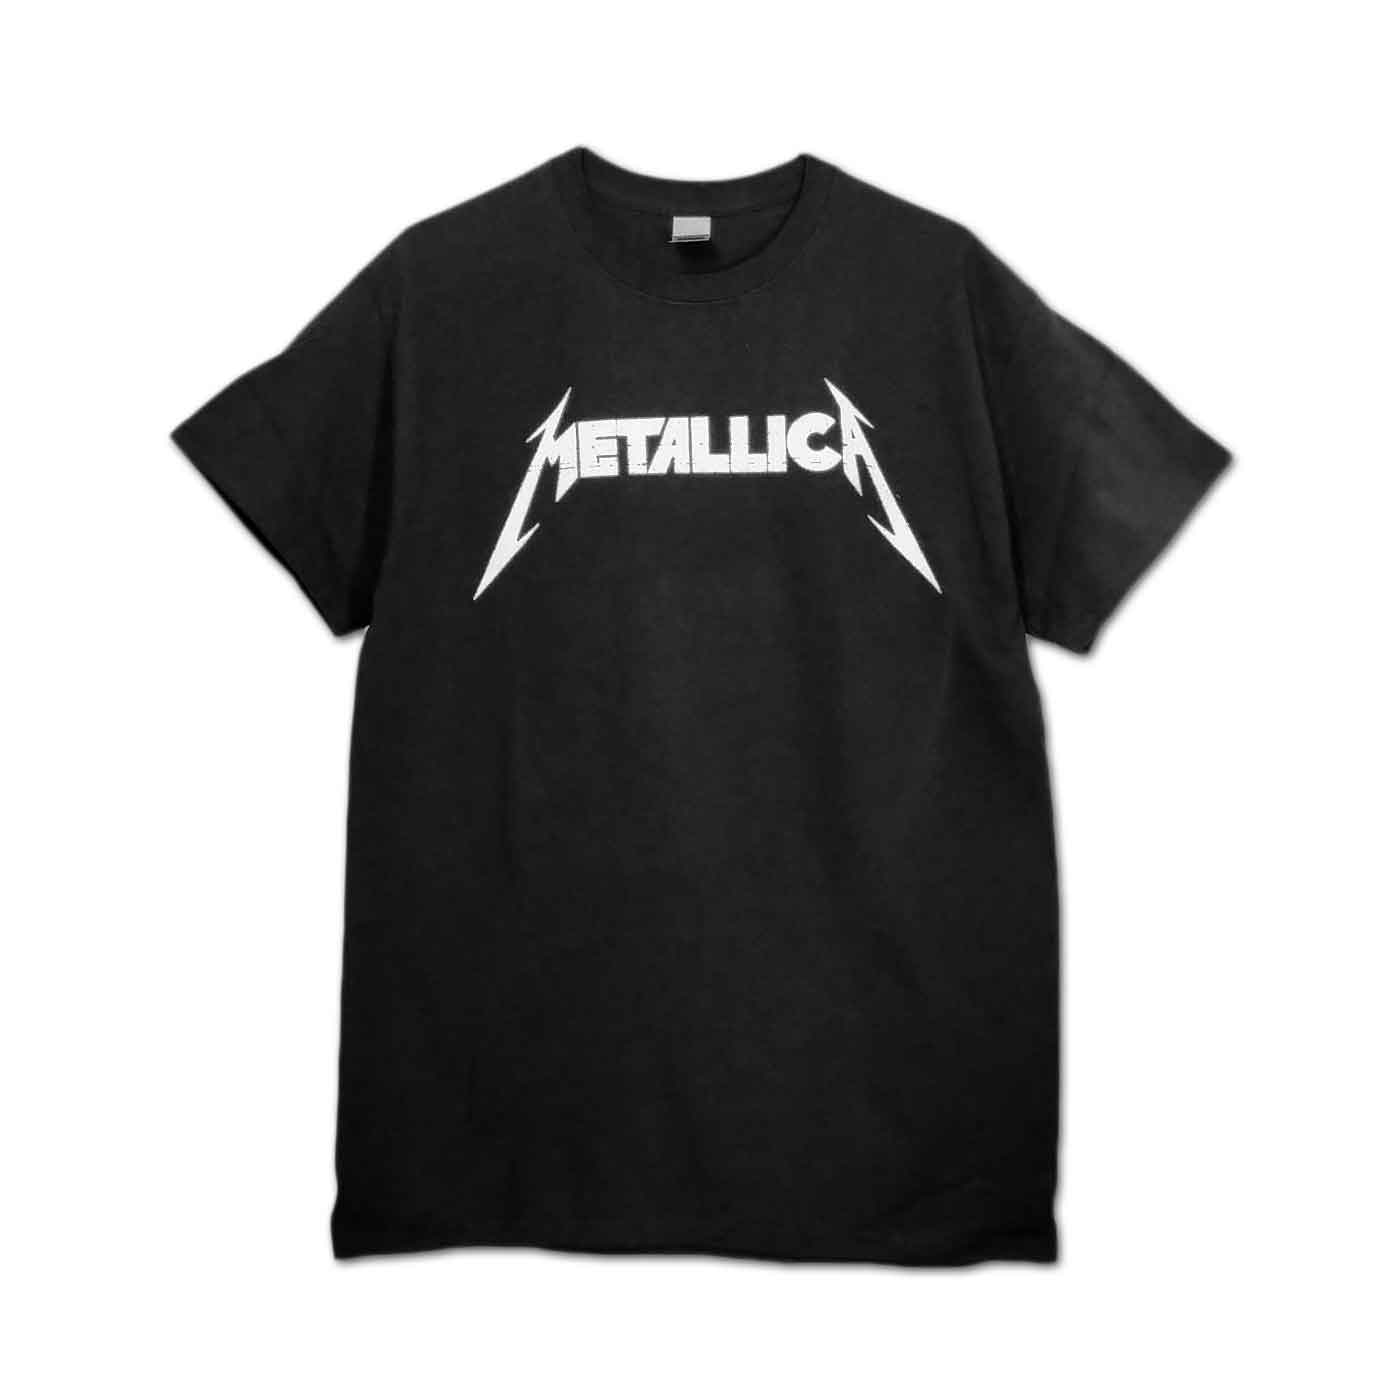 Metallica バンドTシャツ メタリカ Master Of Puppets Photo - バンドT ...